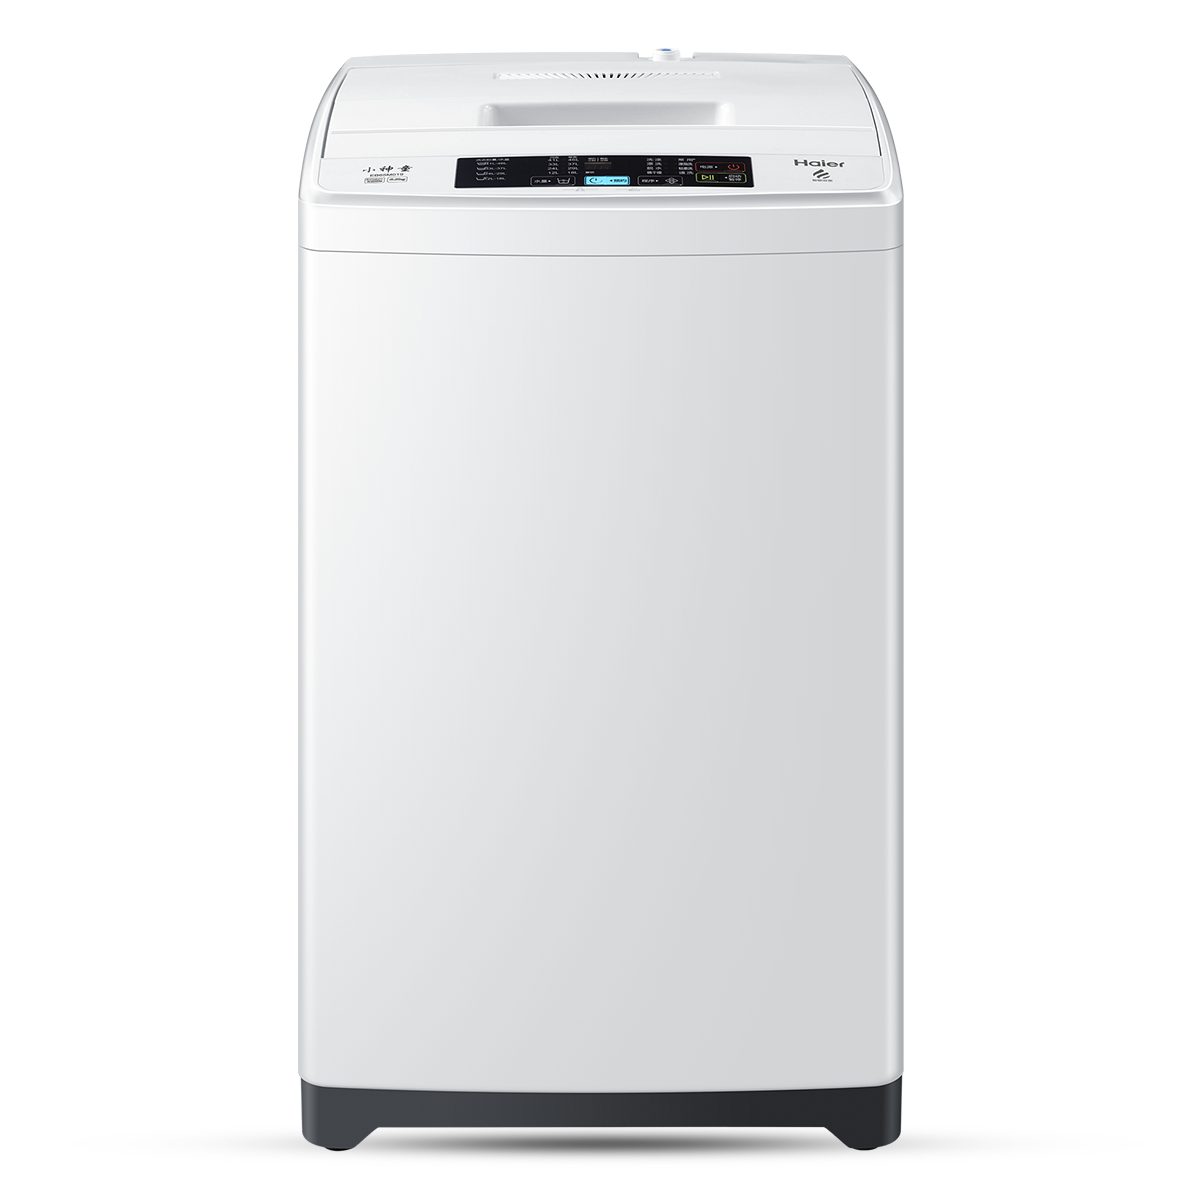 海尔Haier洗衣机 EB65M019 说明书